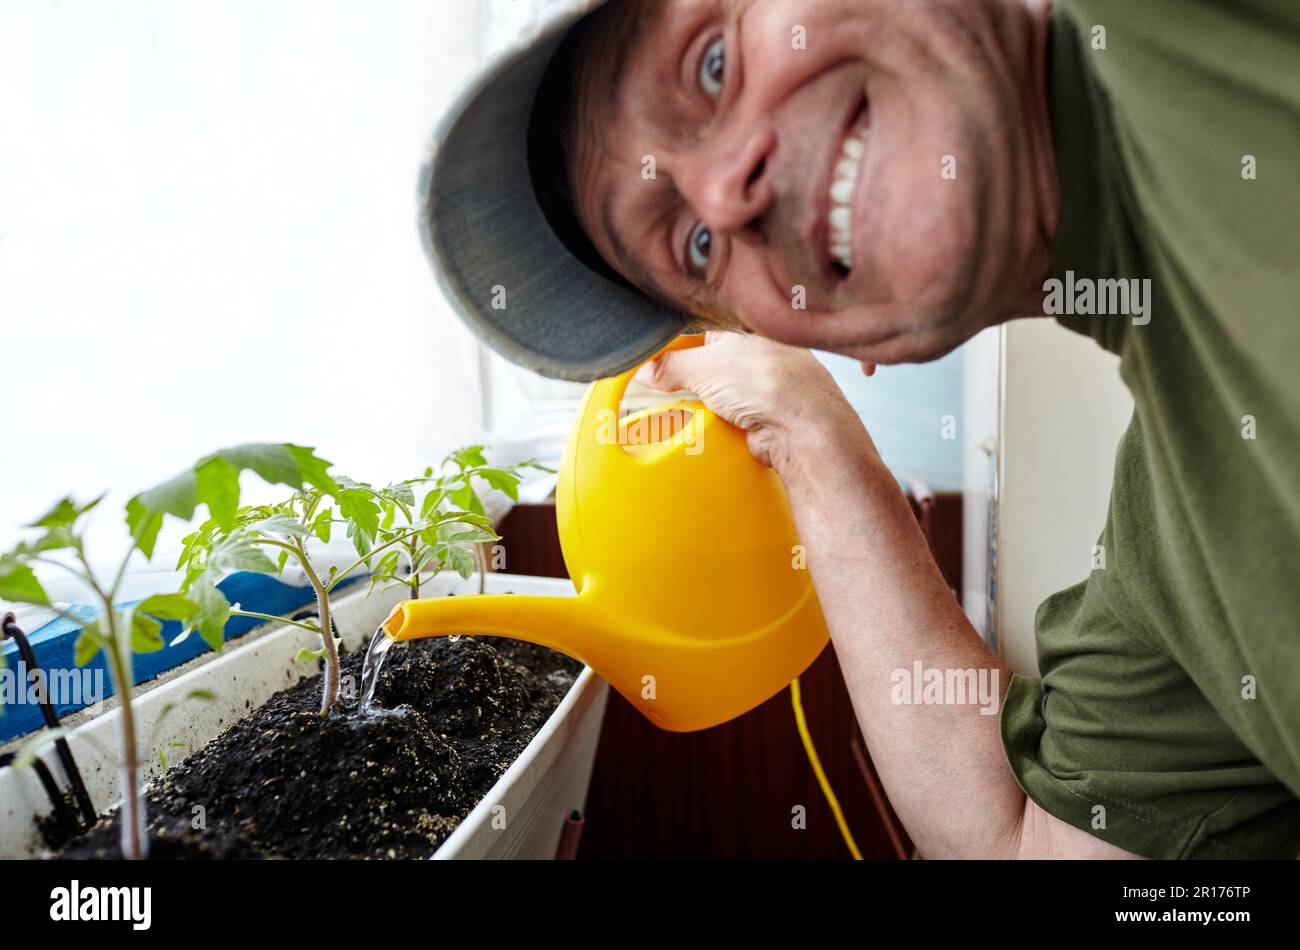 Alter Mann, der im Gewächshaus gärtnerte. Die Hände der Männer halten die Gießkannen und die Tomatenpflanze Stockfoto